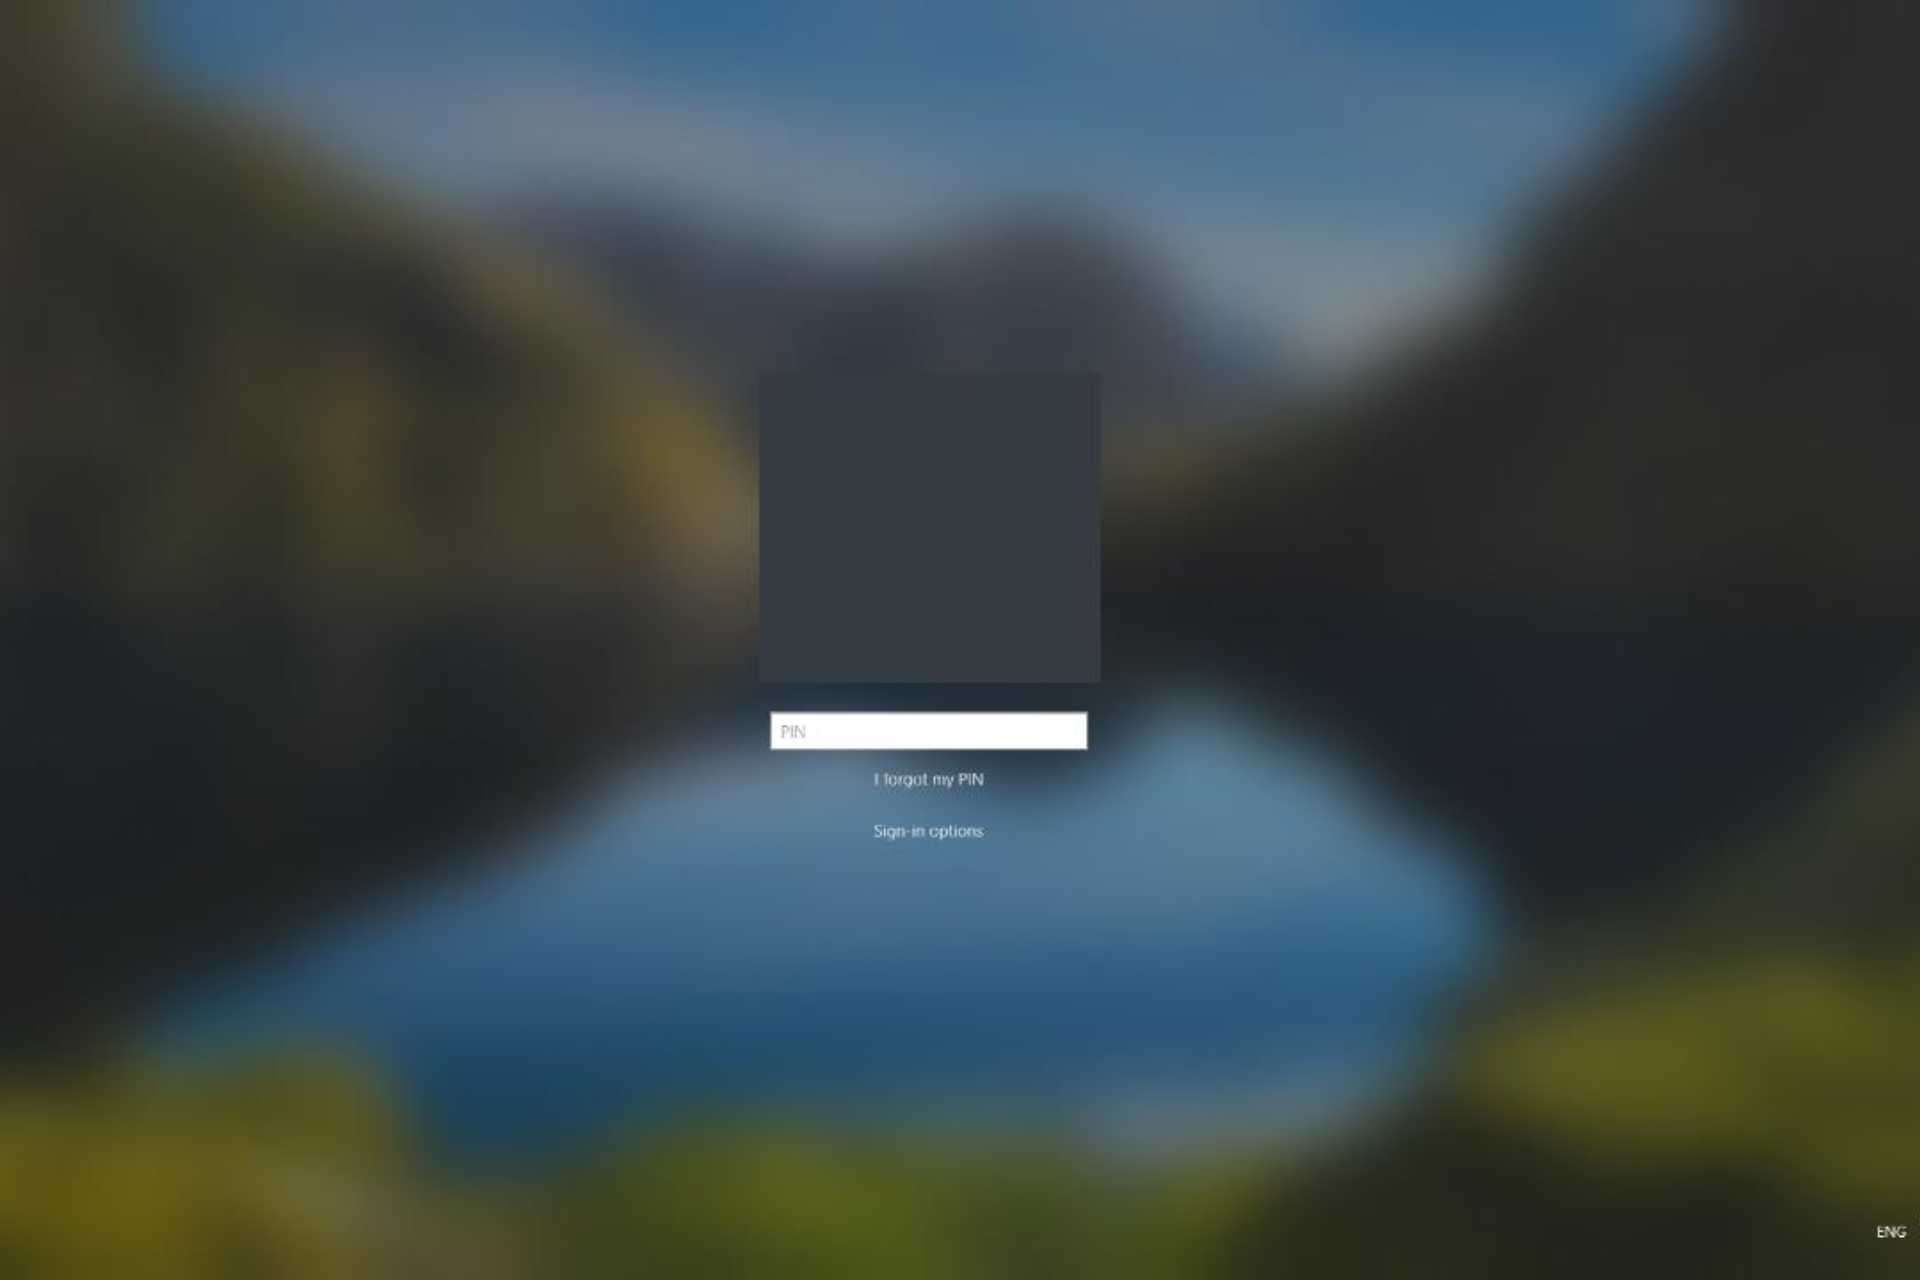 windows 10 login screen doesnt appear